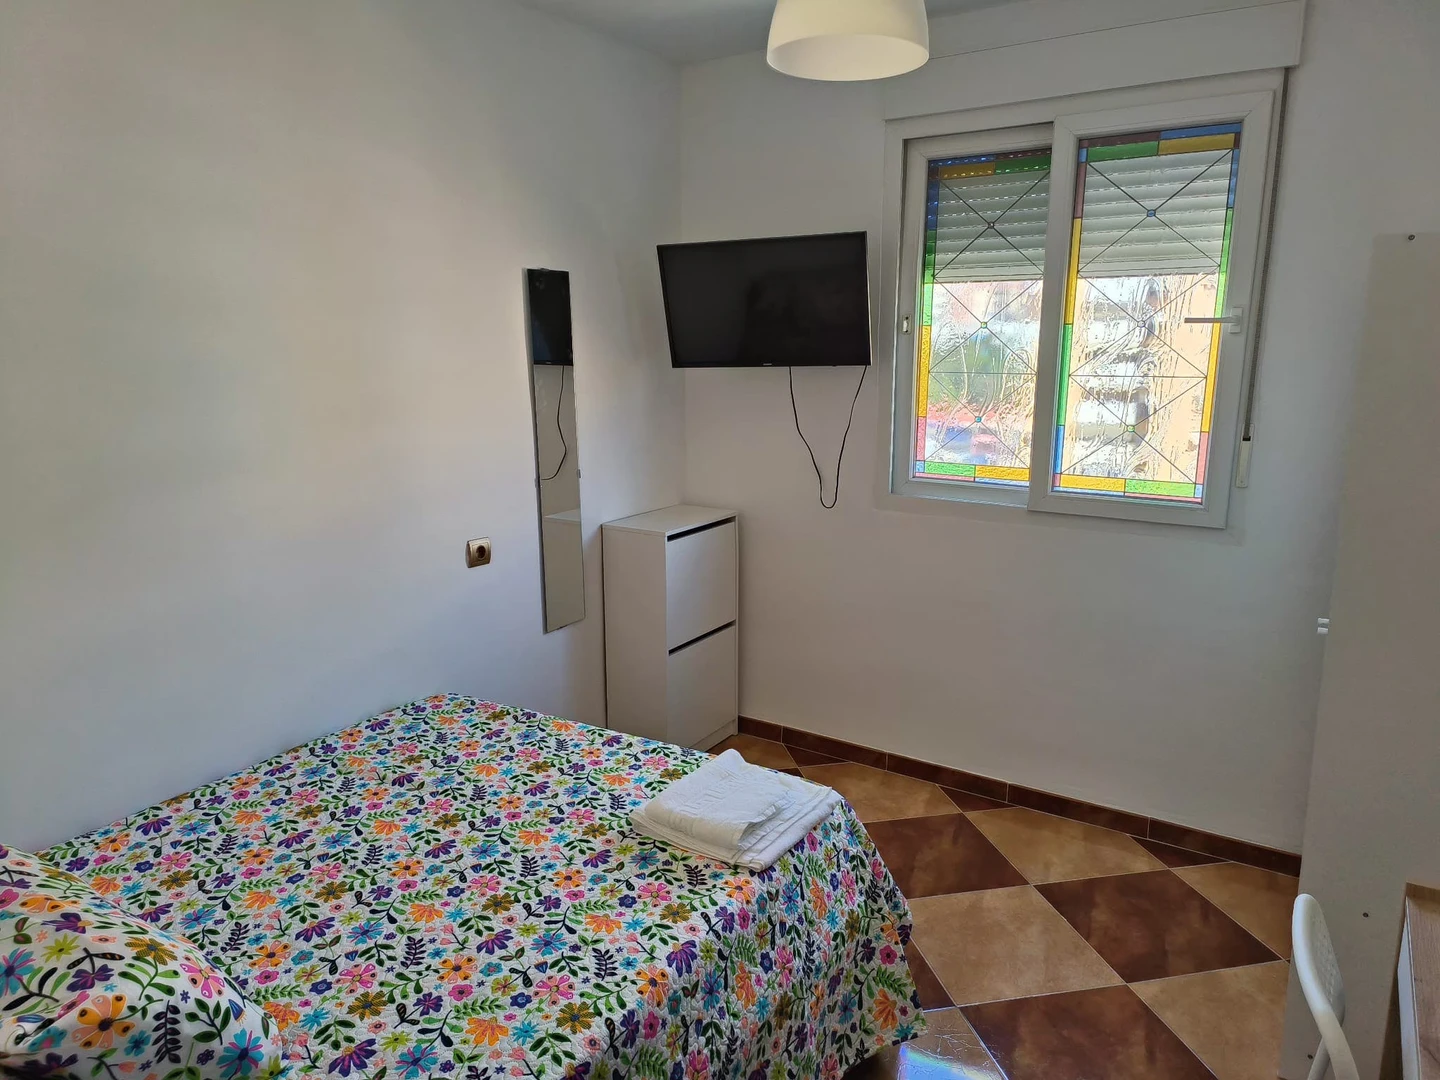 Habitación compartida con otro estudiante en Málaga